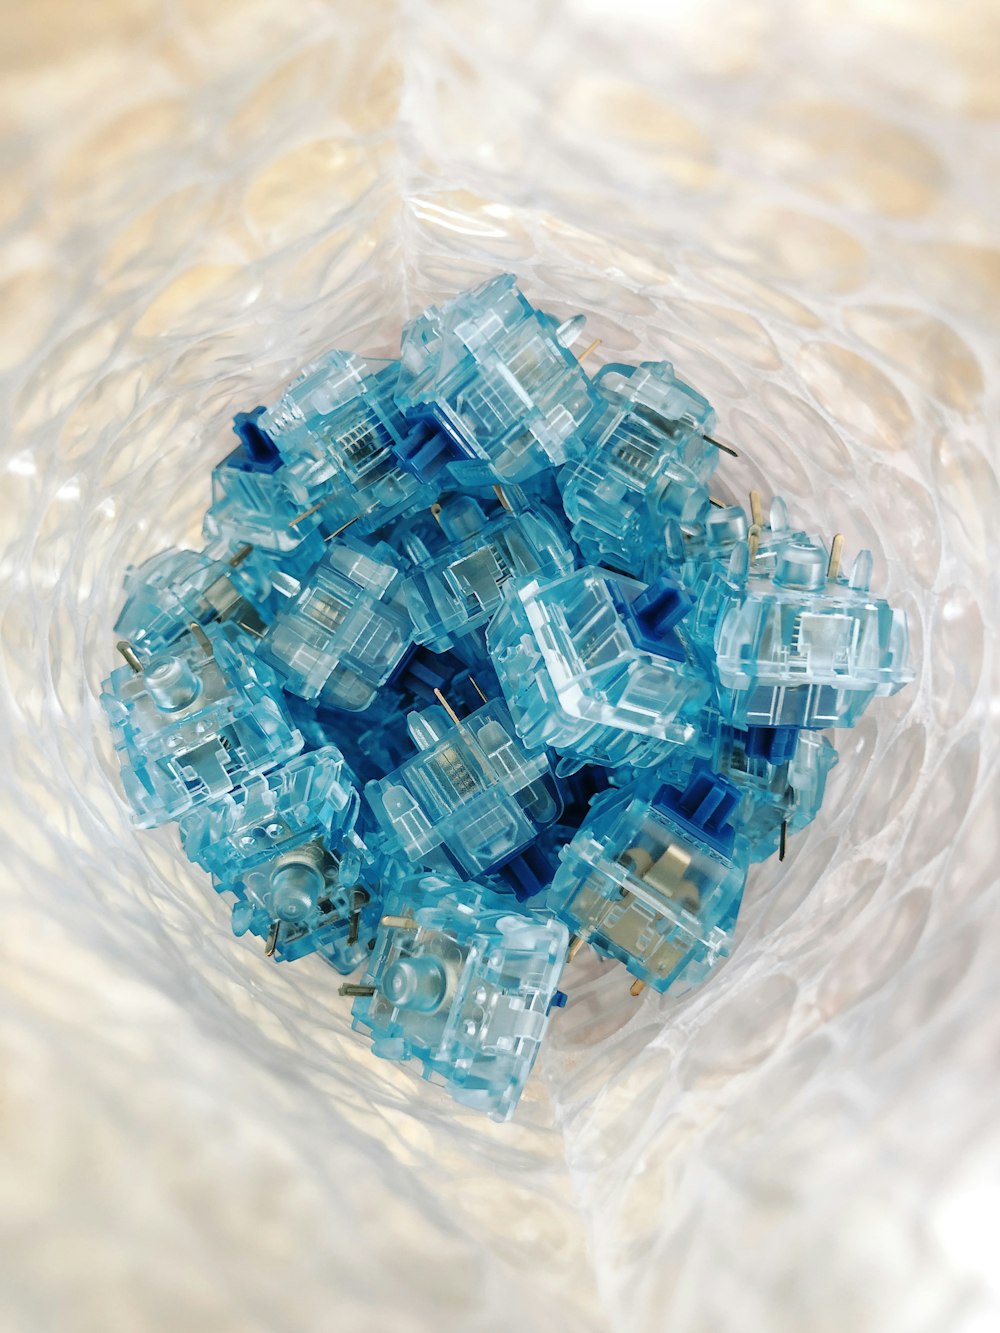 Blocs de jouets en plastique bleu et blanc sur l’eau